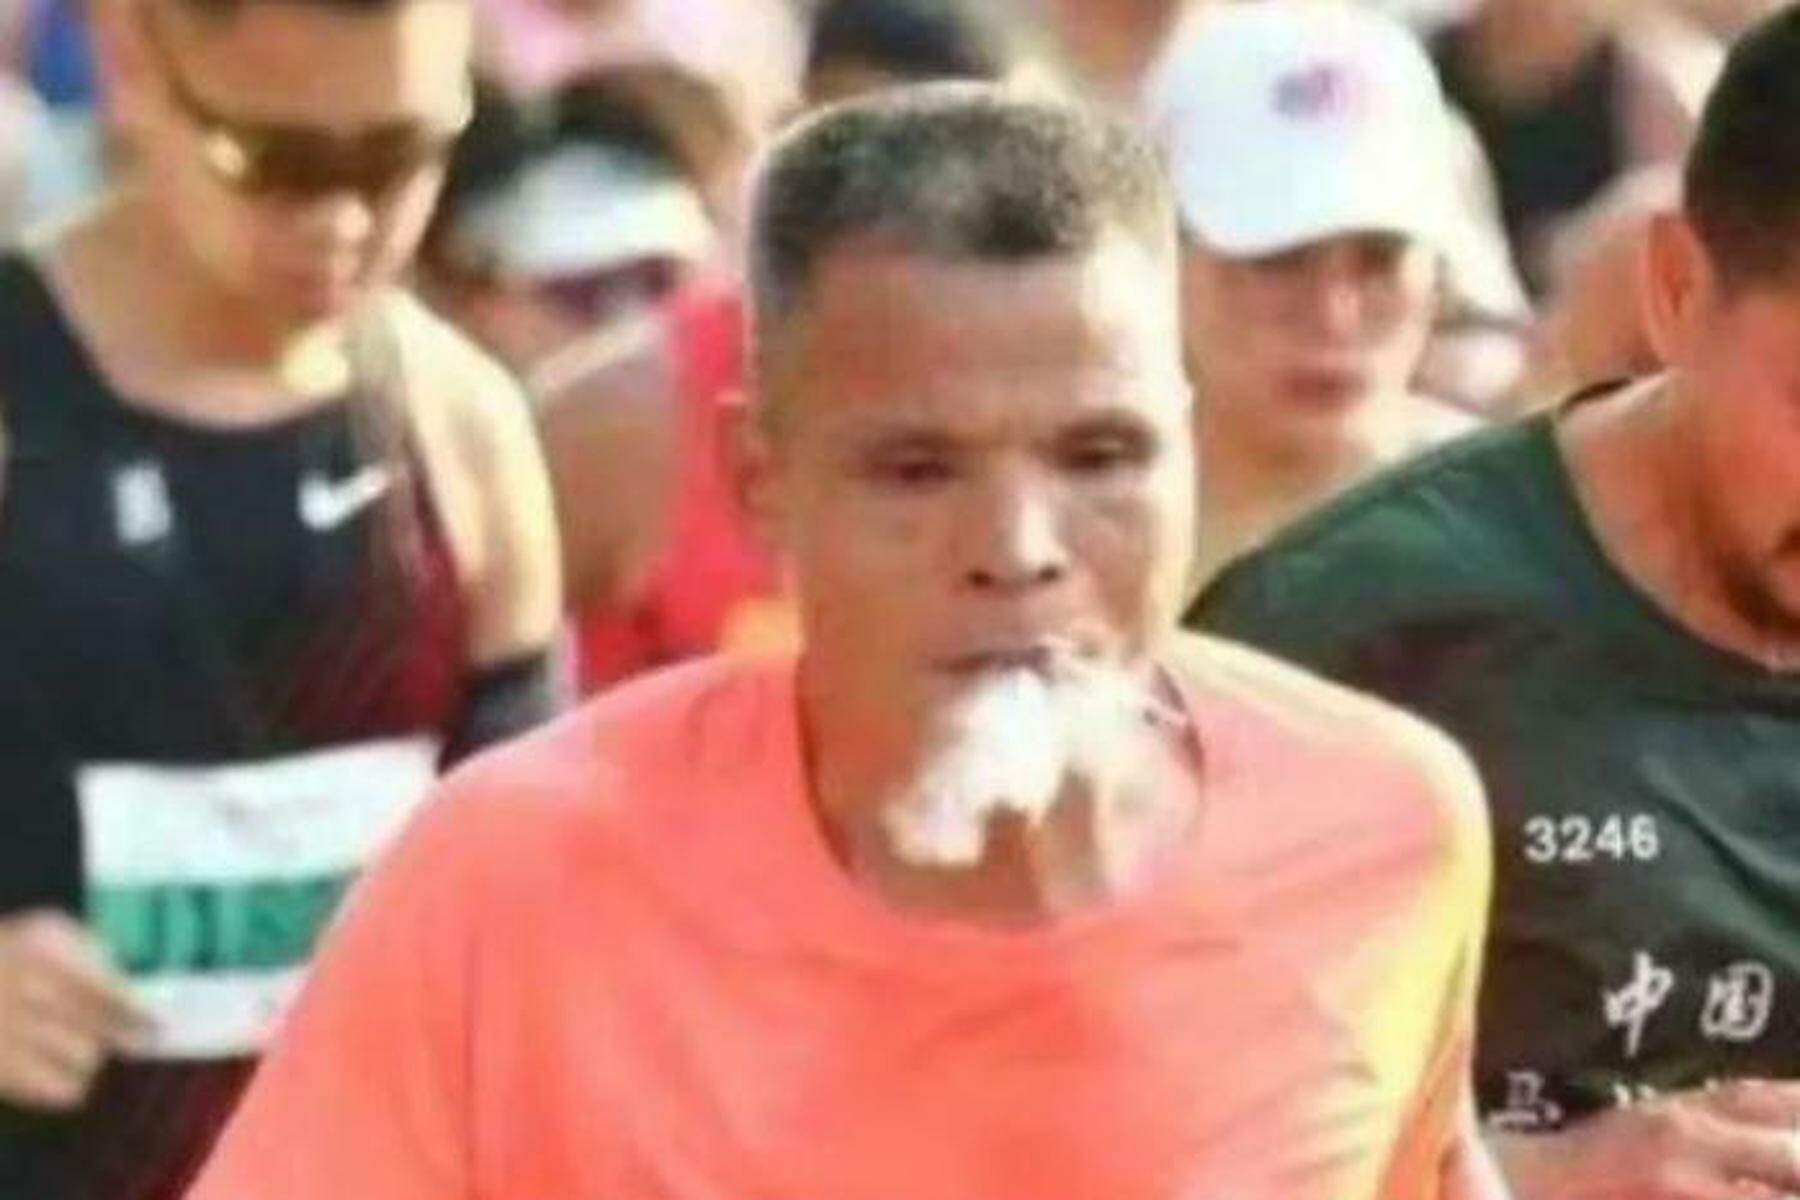 disqualifikation wegen zigaretten | marathonläufer rauchte während des ganzen rennens